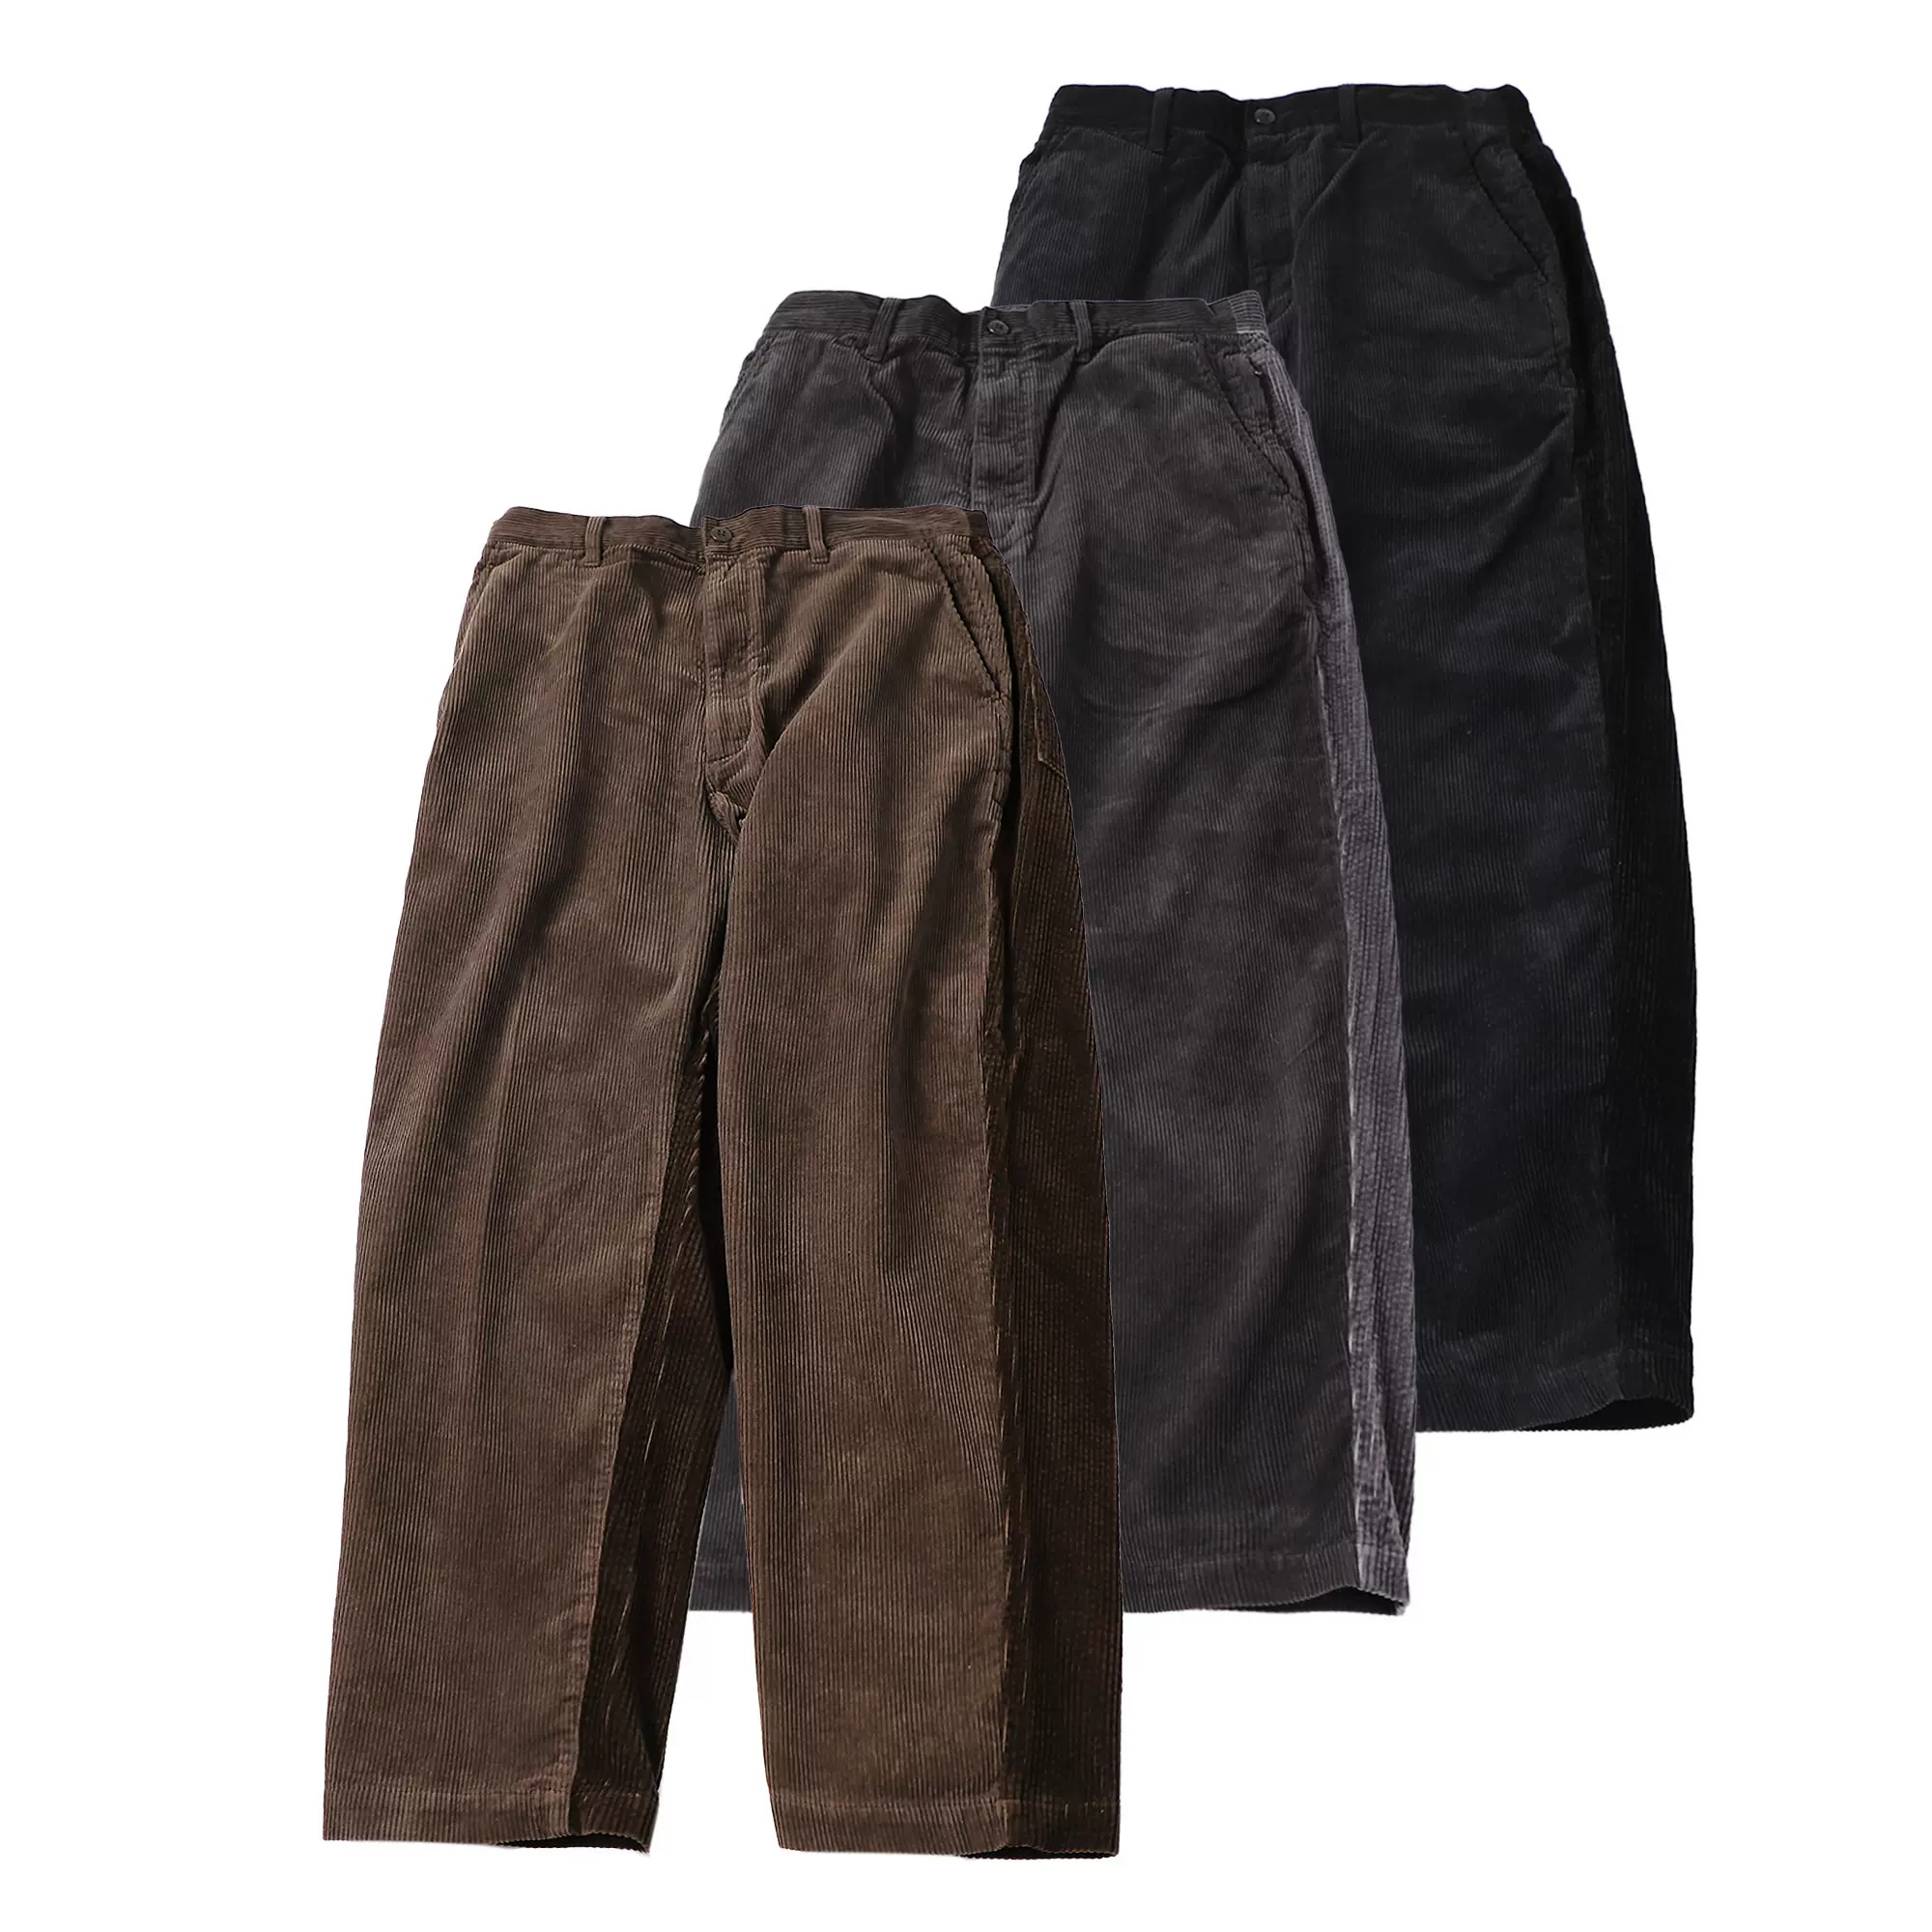 日本BEAMS SSZ BACKSIDE CORD PANTS 寬鬆拼色燈芯絨闊腿褲20AW-Taobao